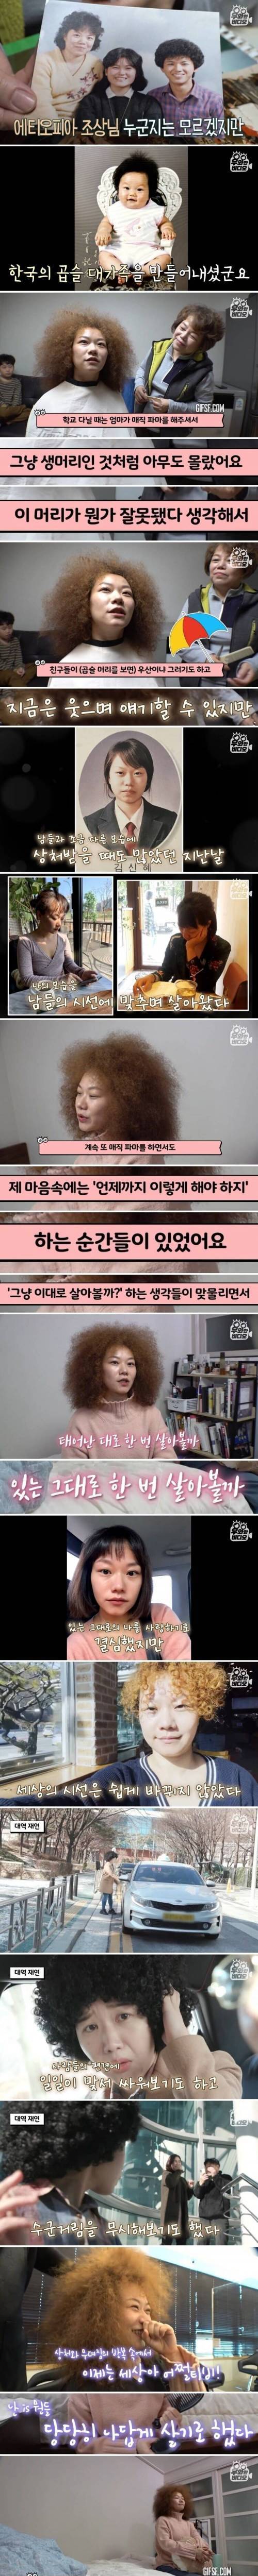 외국인 피가 조금 섞여서 자연곱슬을 가지게 된 한국인.jpg